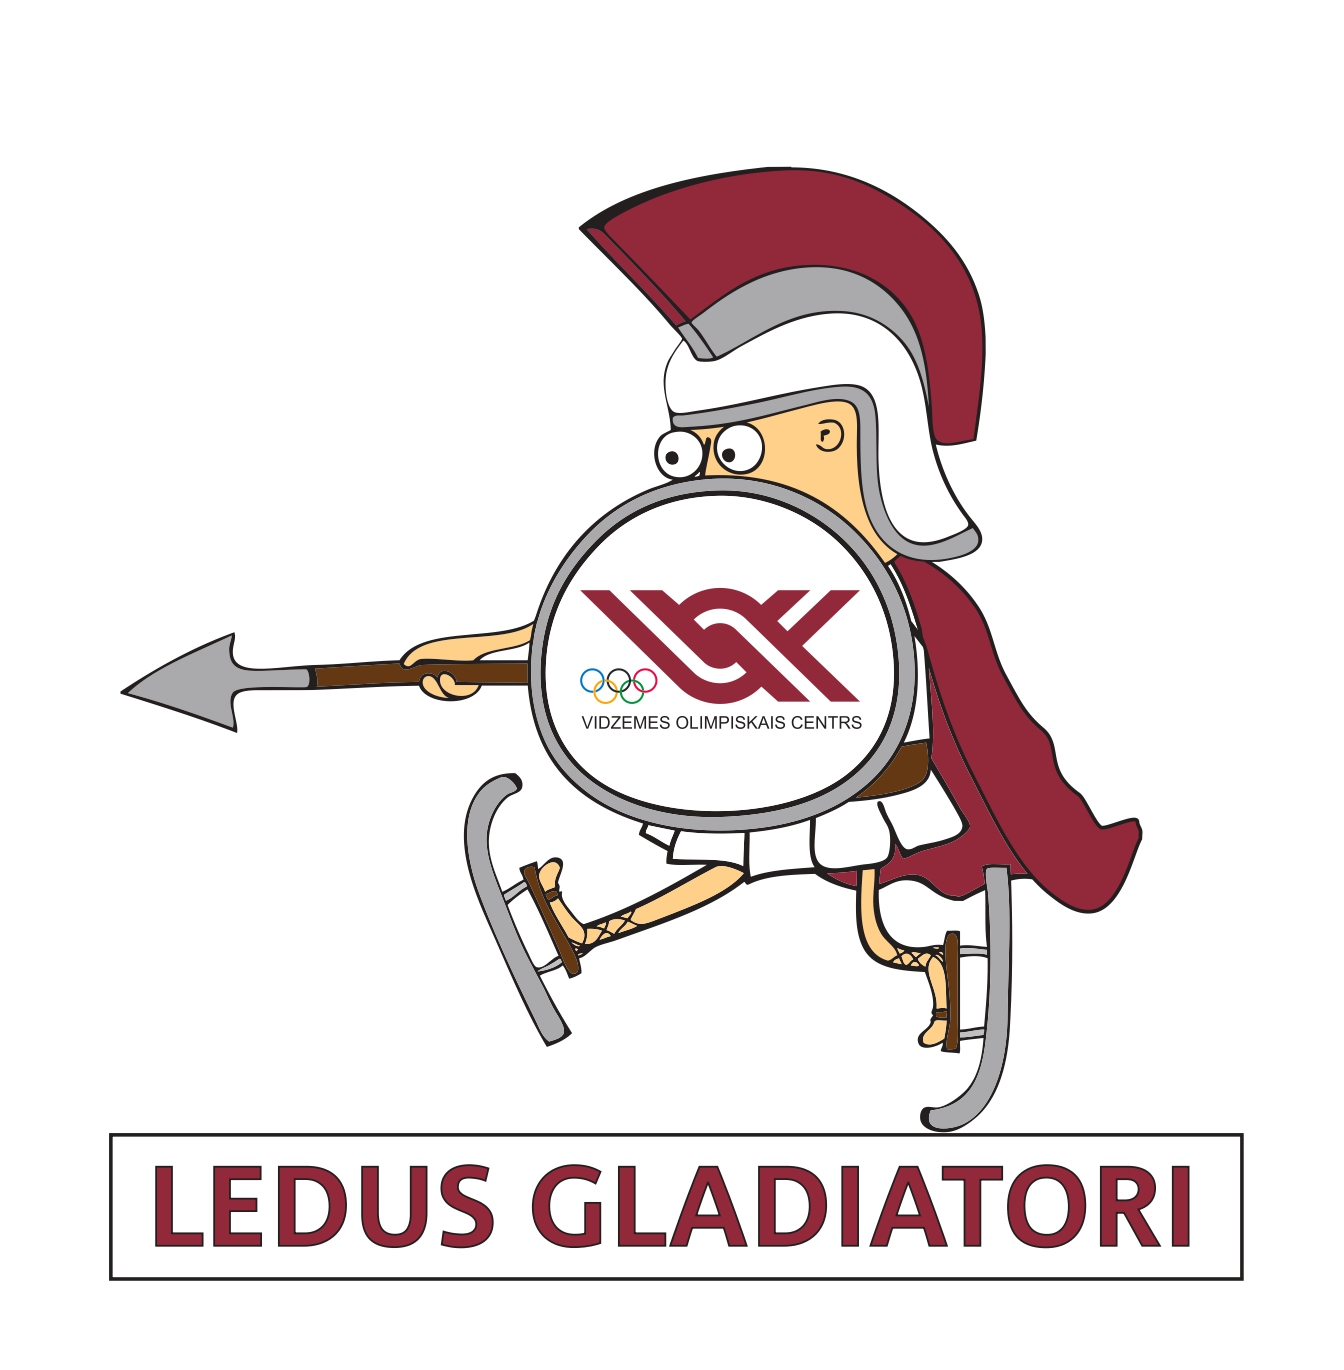 Ledus gladiatori baneris